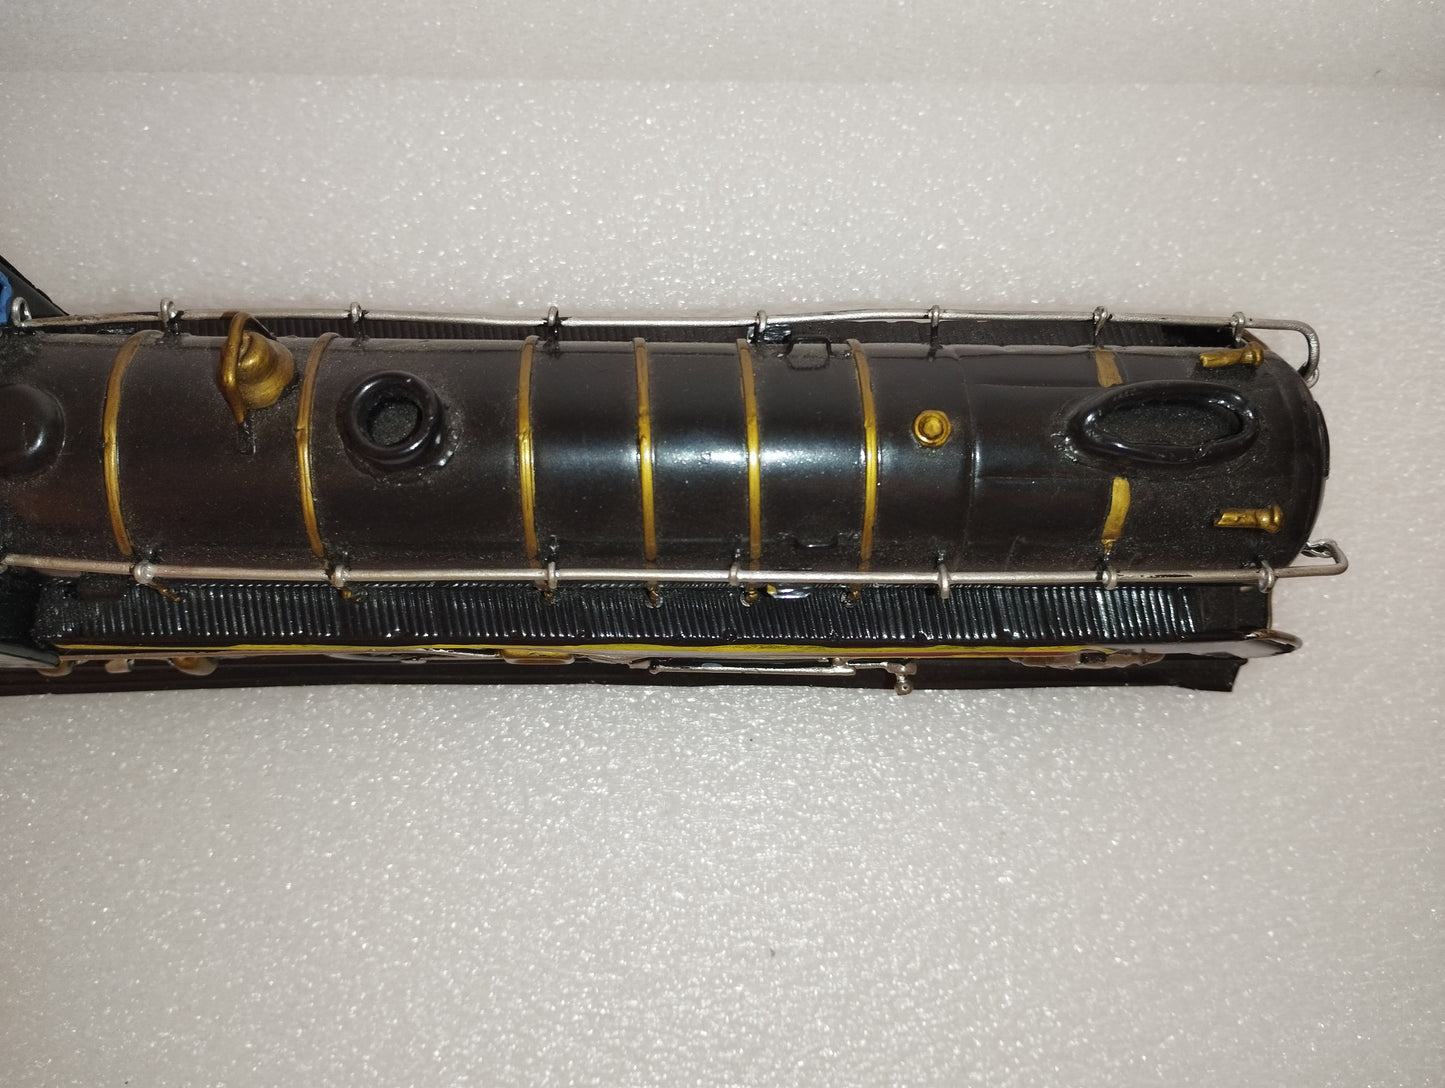 Modello Statico Di Locomotiva A Vapore In Metallo
Lunghezza cm 47,5 cm circa